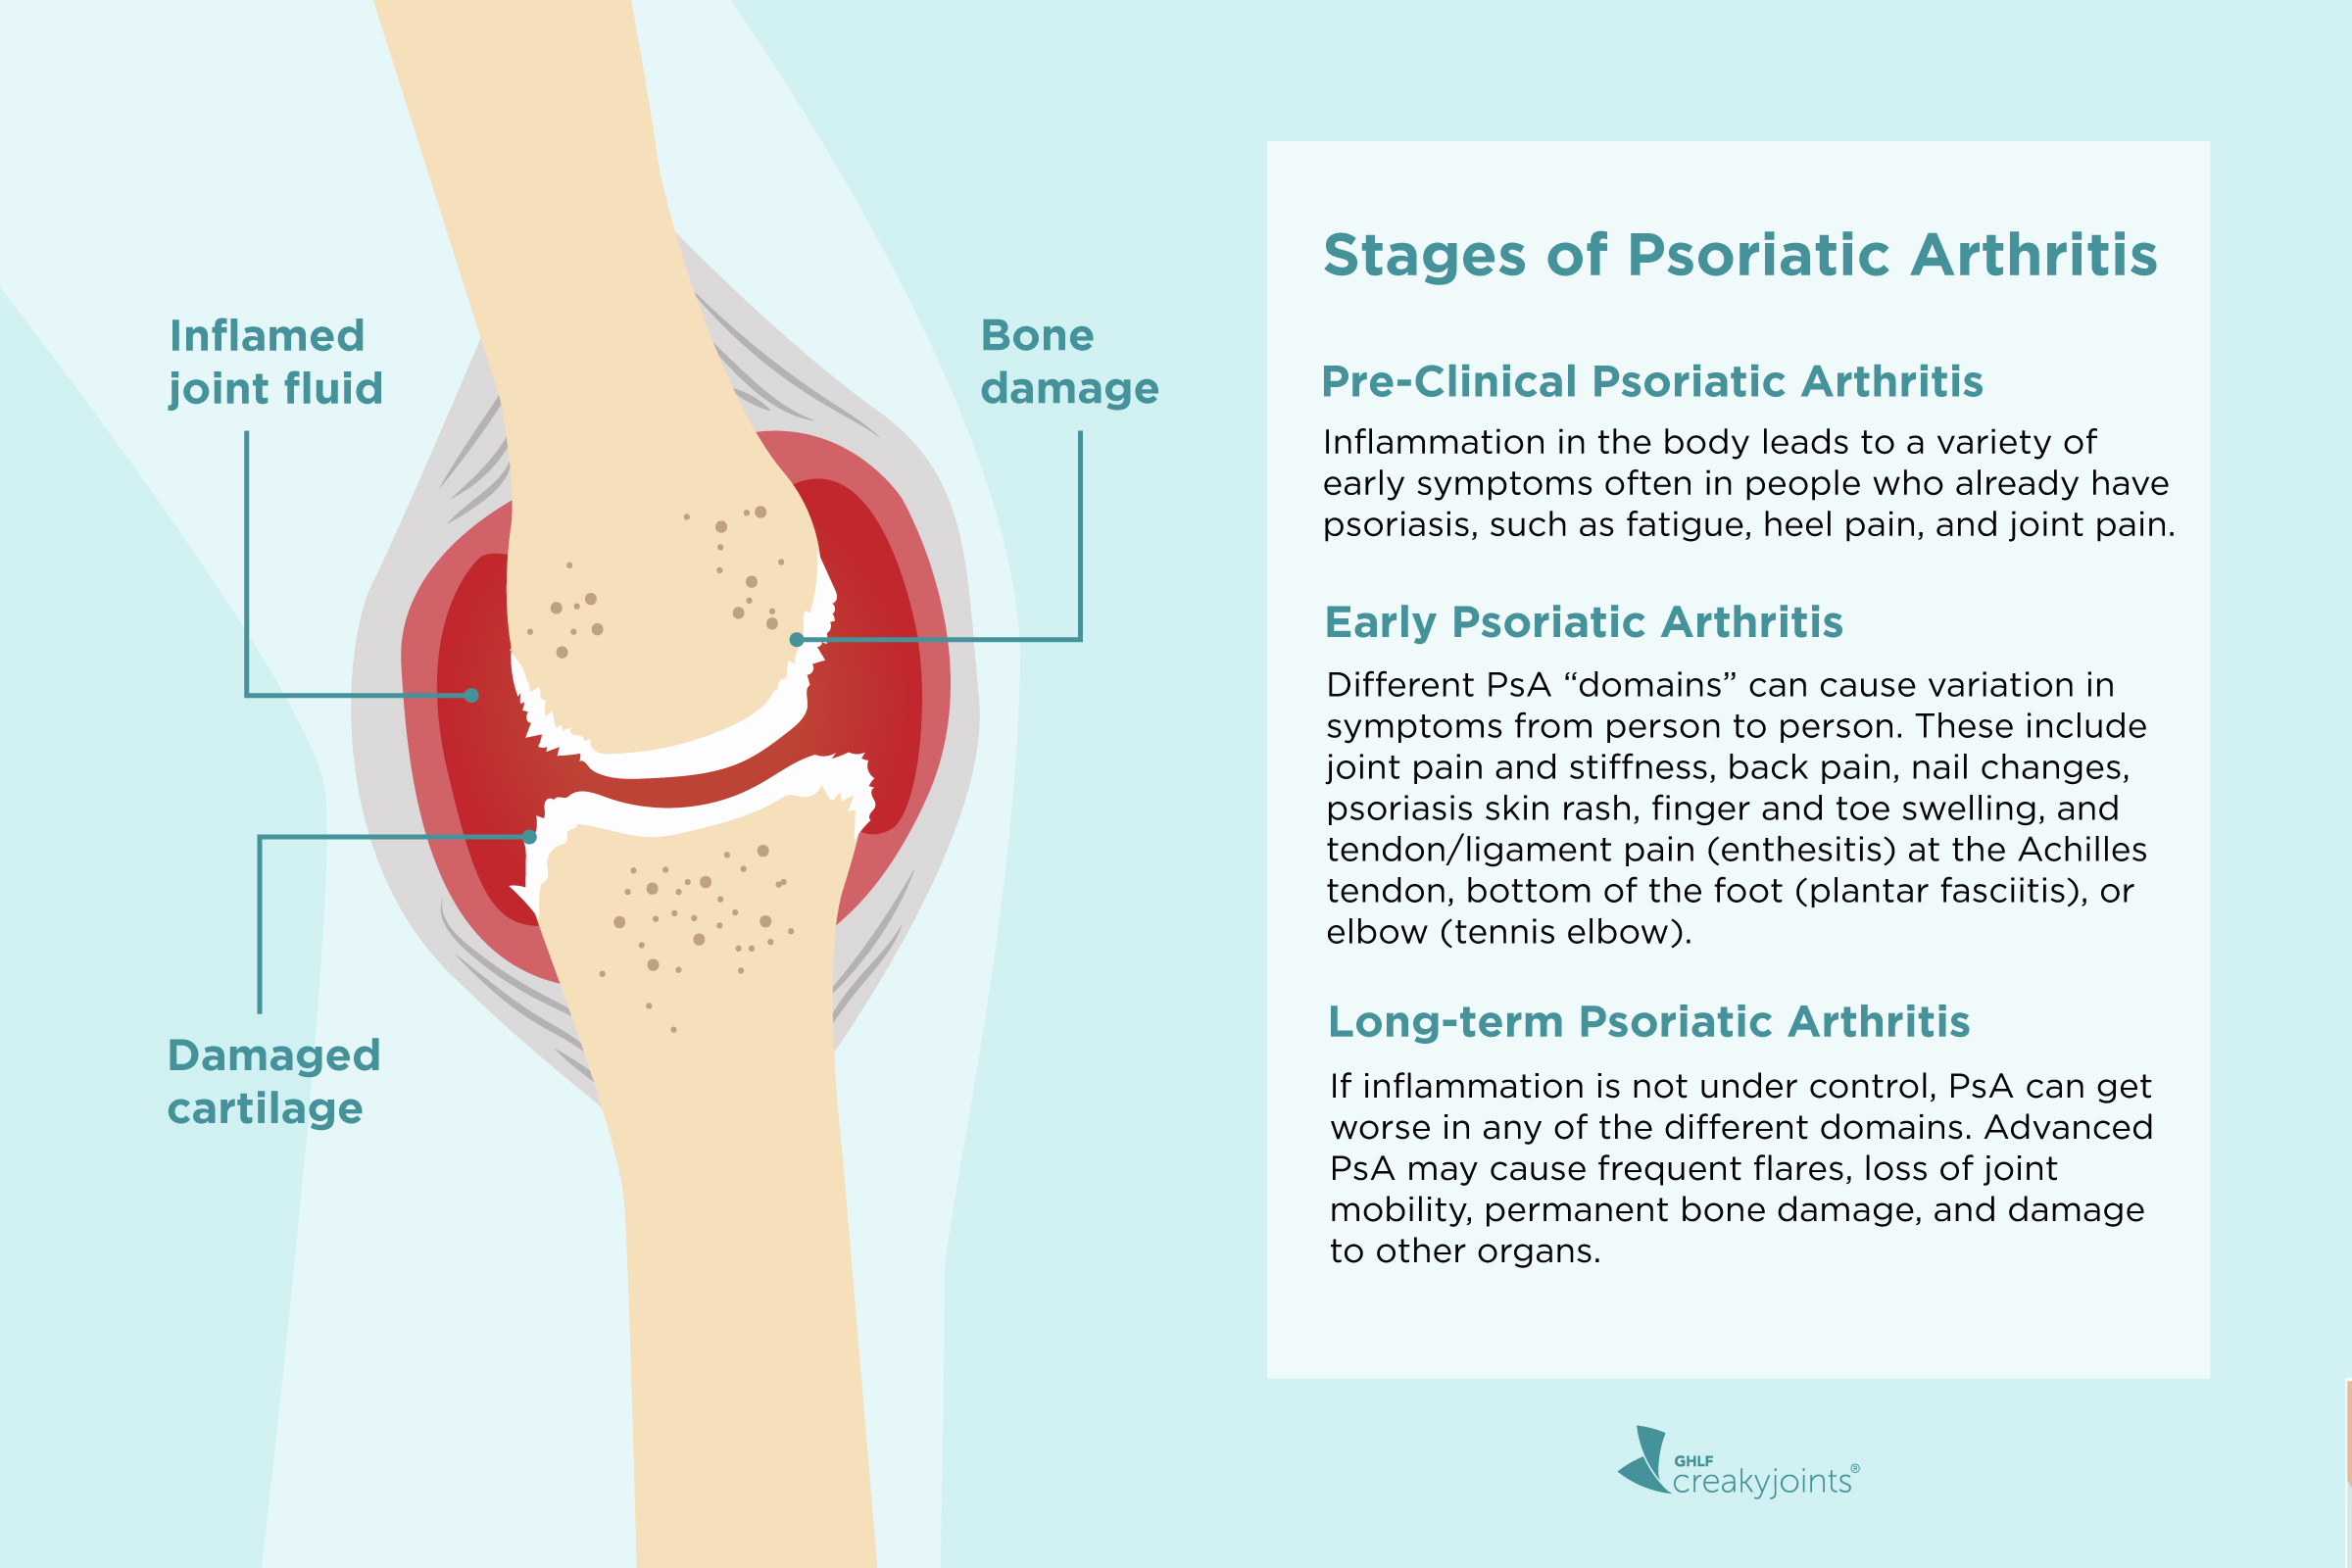 [Disease burden of psoriasis associated with psoriatic arthritis in Hungary]